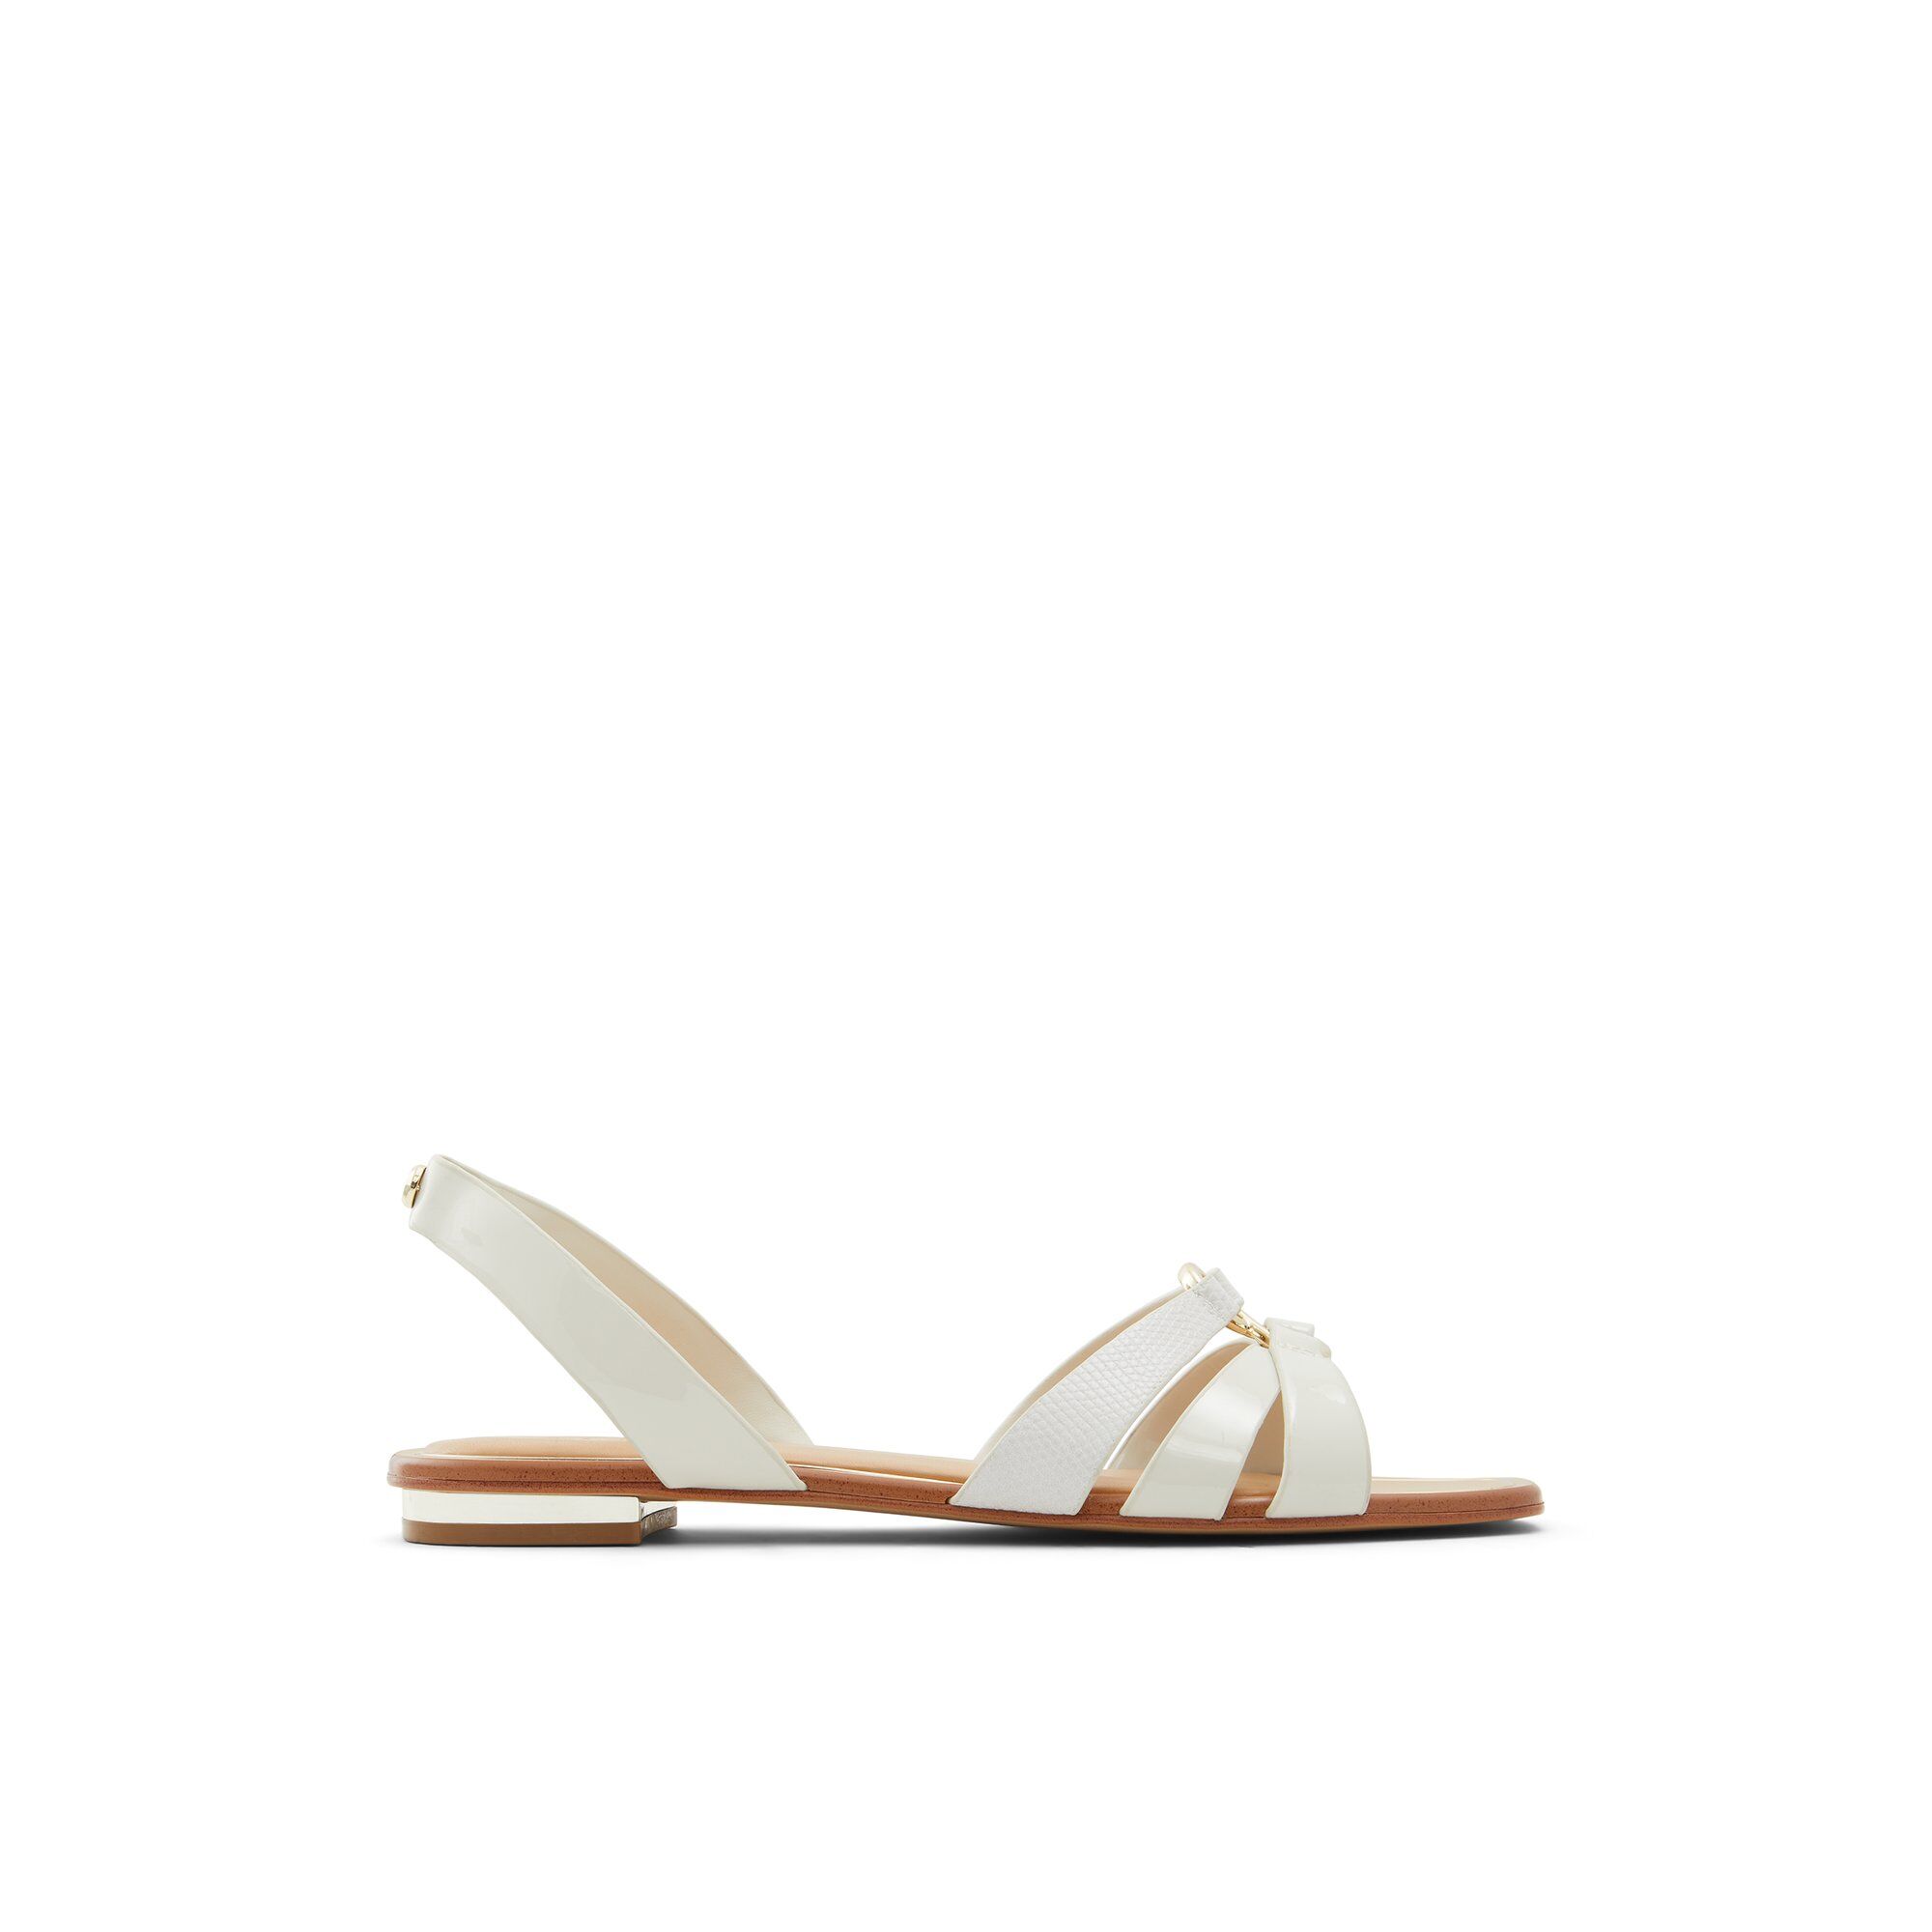 ALDO Marassi - Women's Flat Sandals - White, Size 7